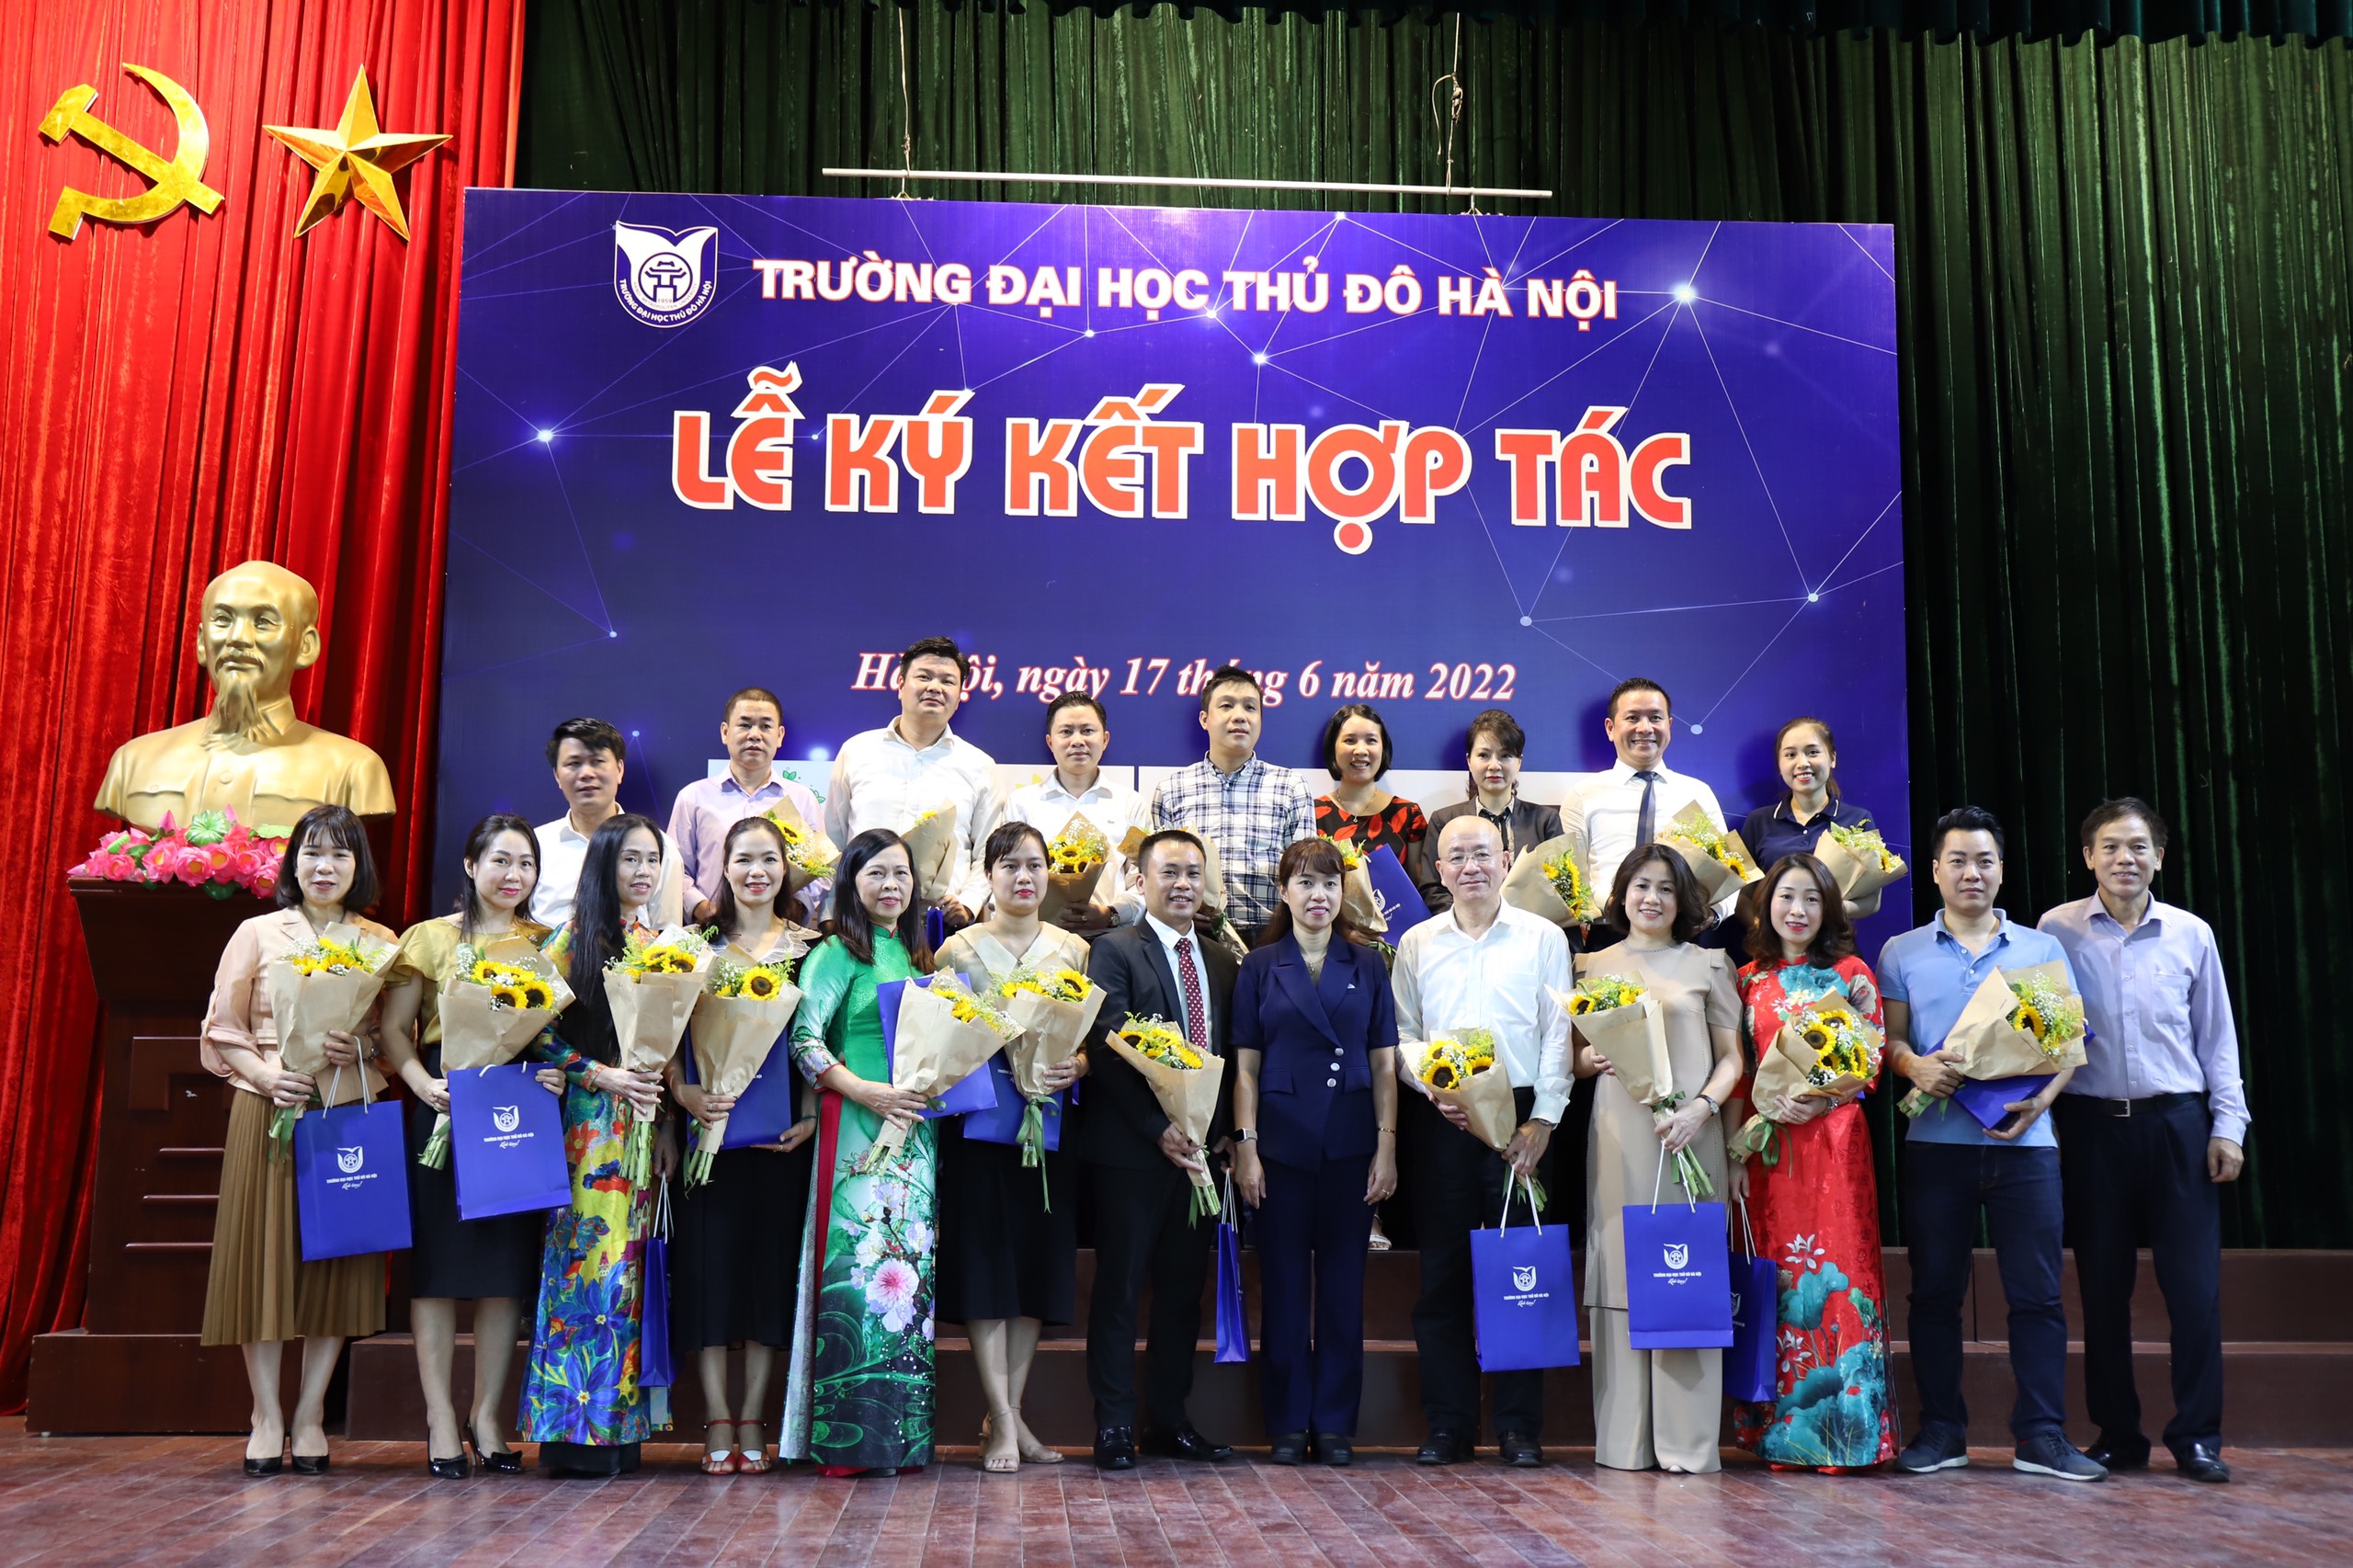 Trường Đại học Thủ đô Hà Nội ký kết với nhiều đối tác tại Ngày hội giới thiệu việc làm cho sinh viên